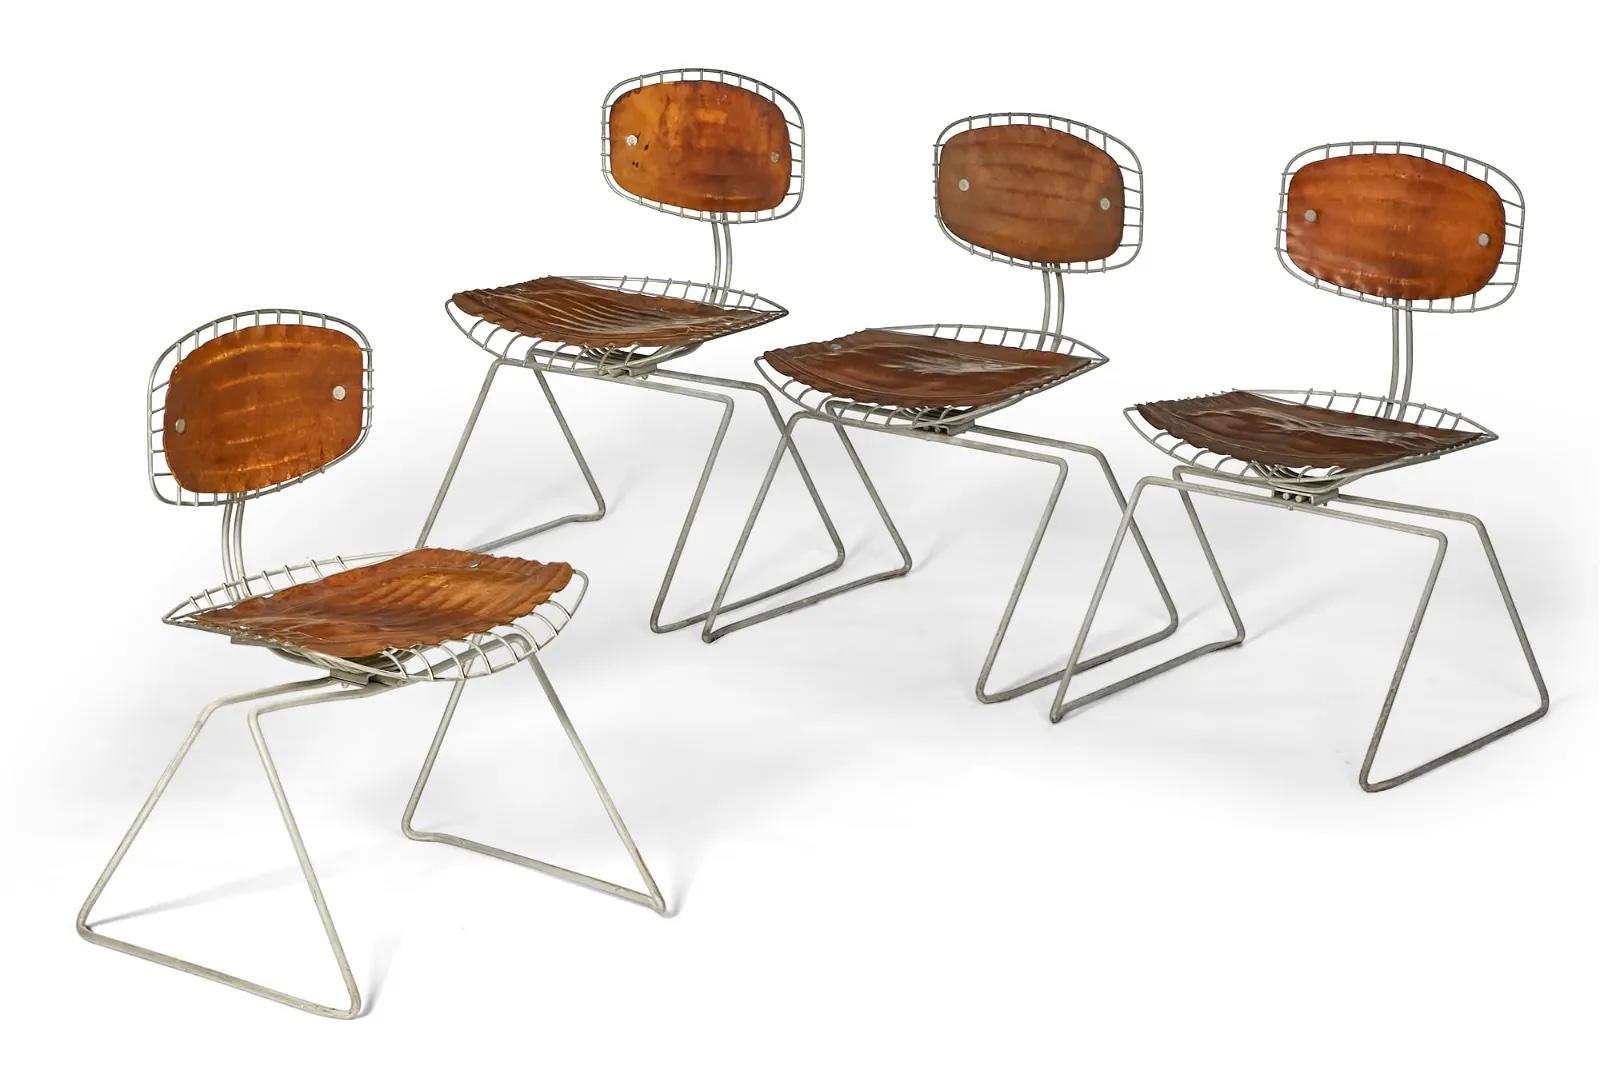 Un ensemble assorti de quatre chaises Beaubourg en cuir et métal de Michel Cadestin et Georges Laurent, provenant du Centre Georges Pompidou, Paris. Ces chaises ont été conçues en 1976 pour le concours visant à déterminer les chaises qui seraient